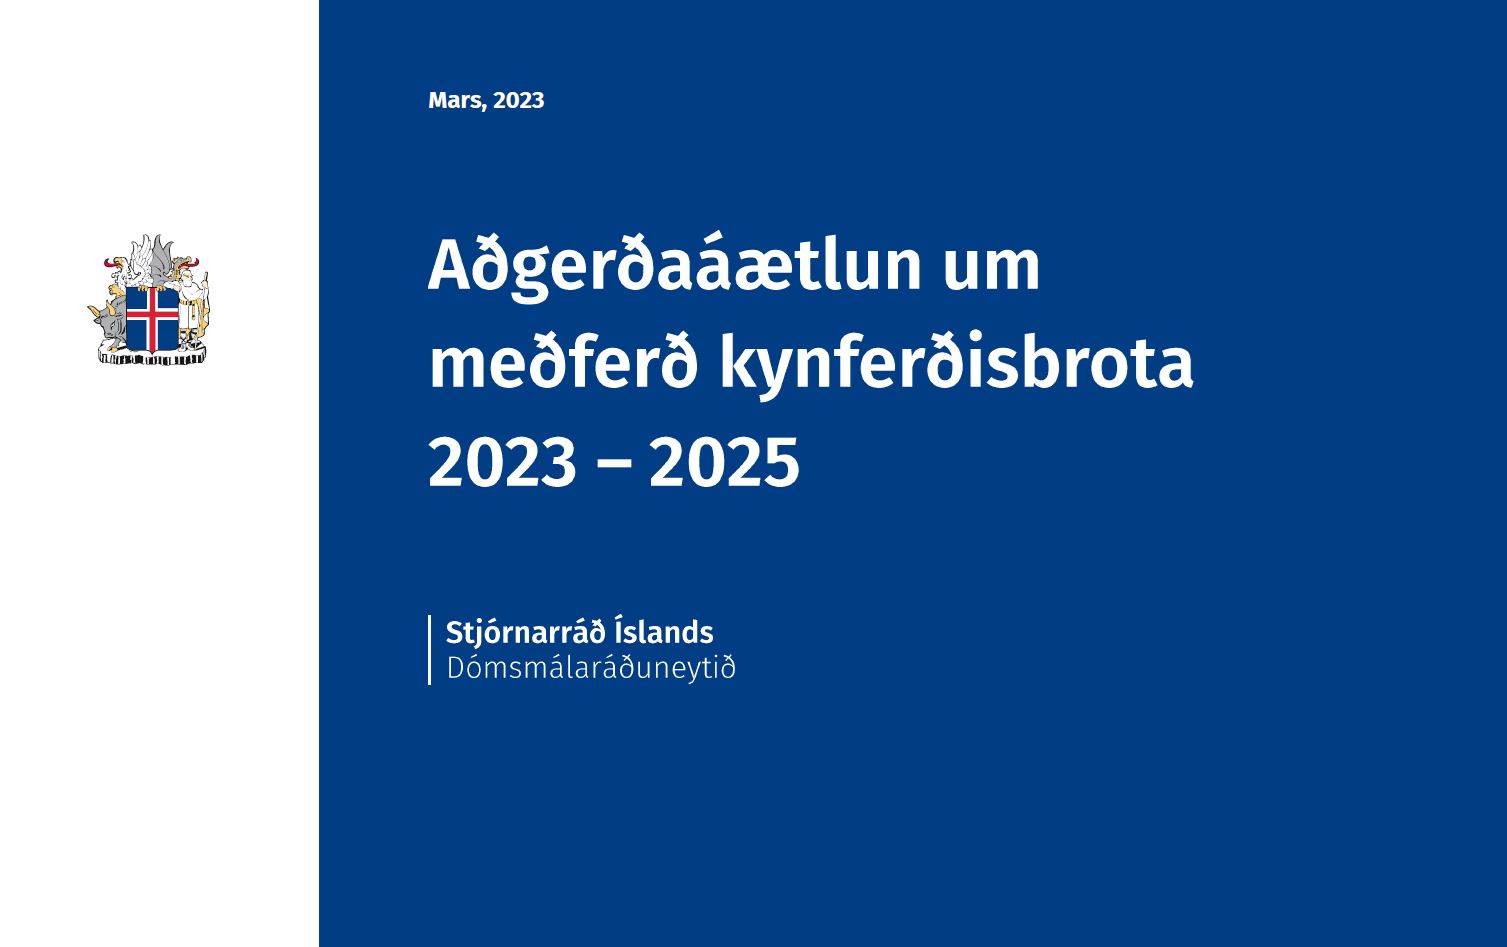 Ný aðgerðaráætlun um meðferð kynferðisbrota fyrir árin 2023 - 2025 - mynd